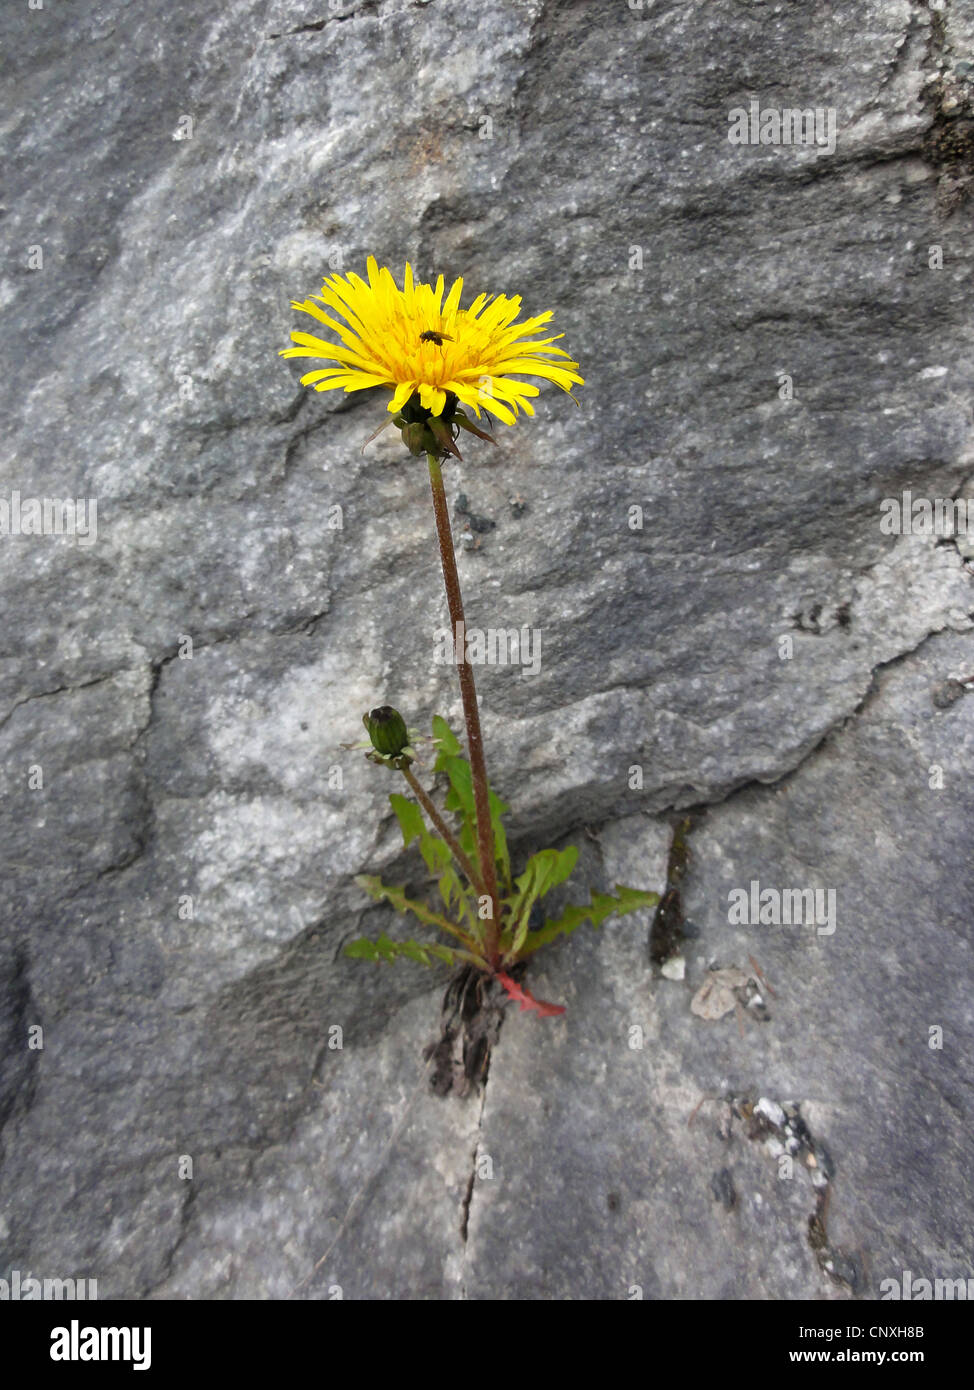 Le pissenlit officinal (Taraxacum officinale), qui fleurit dans les crevasses, Norvège, Troms Banque D'Images